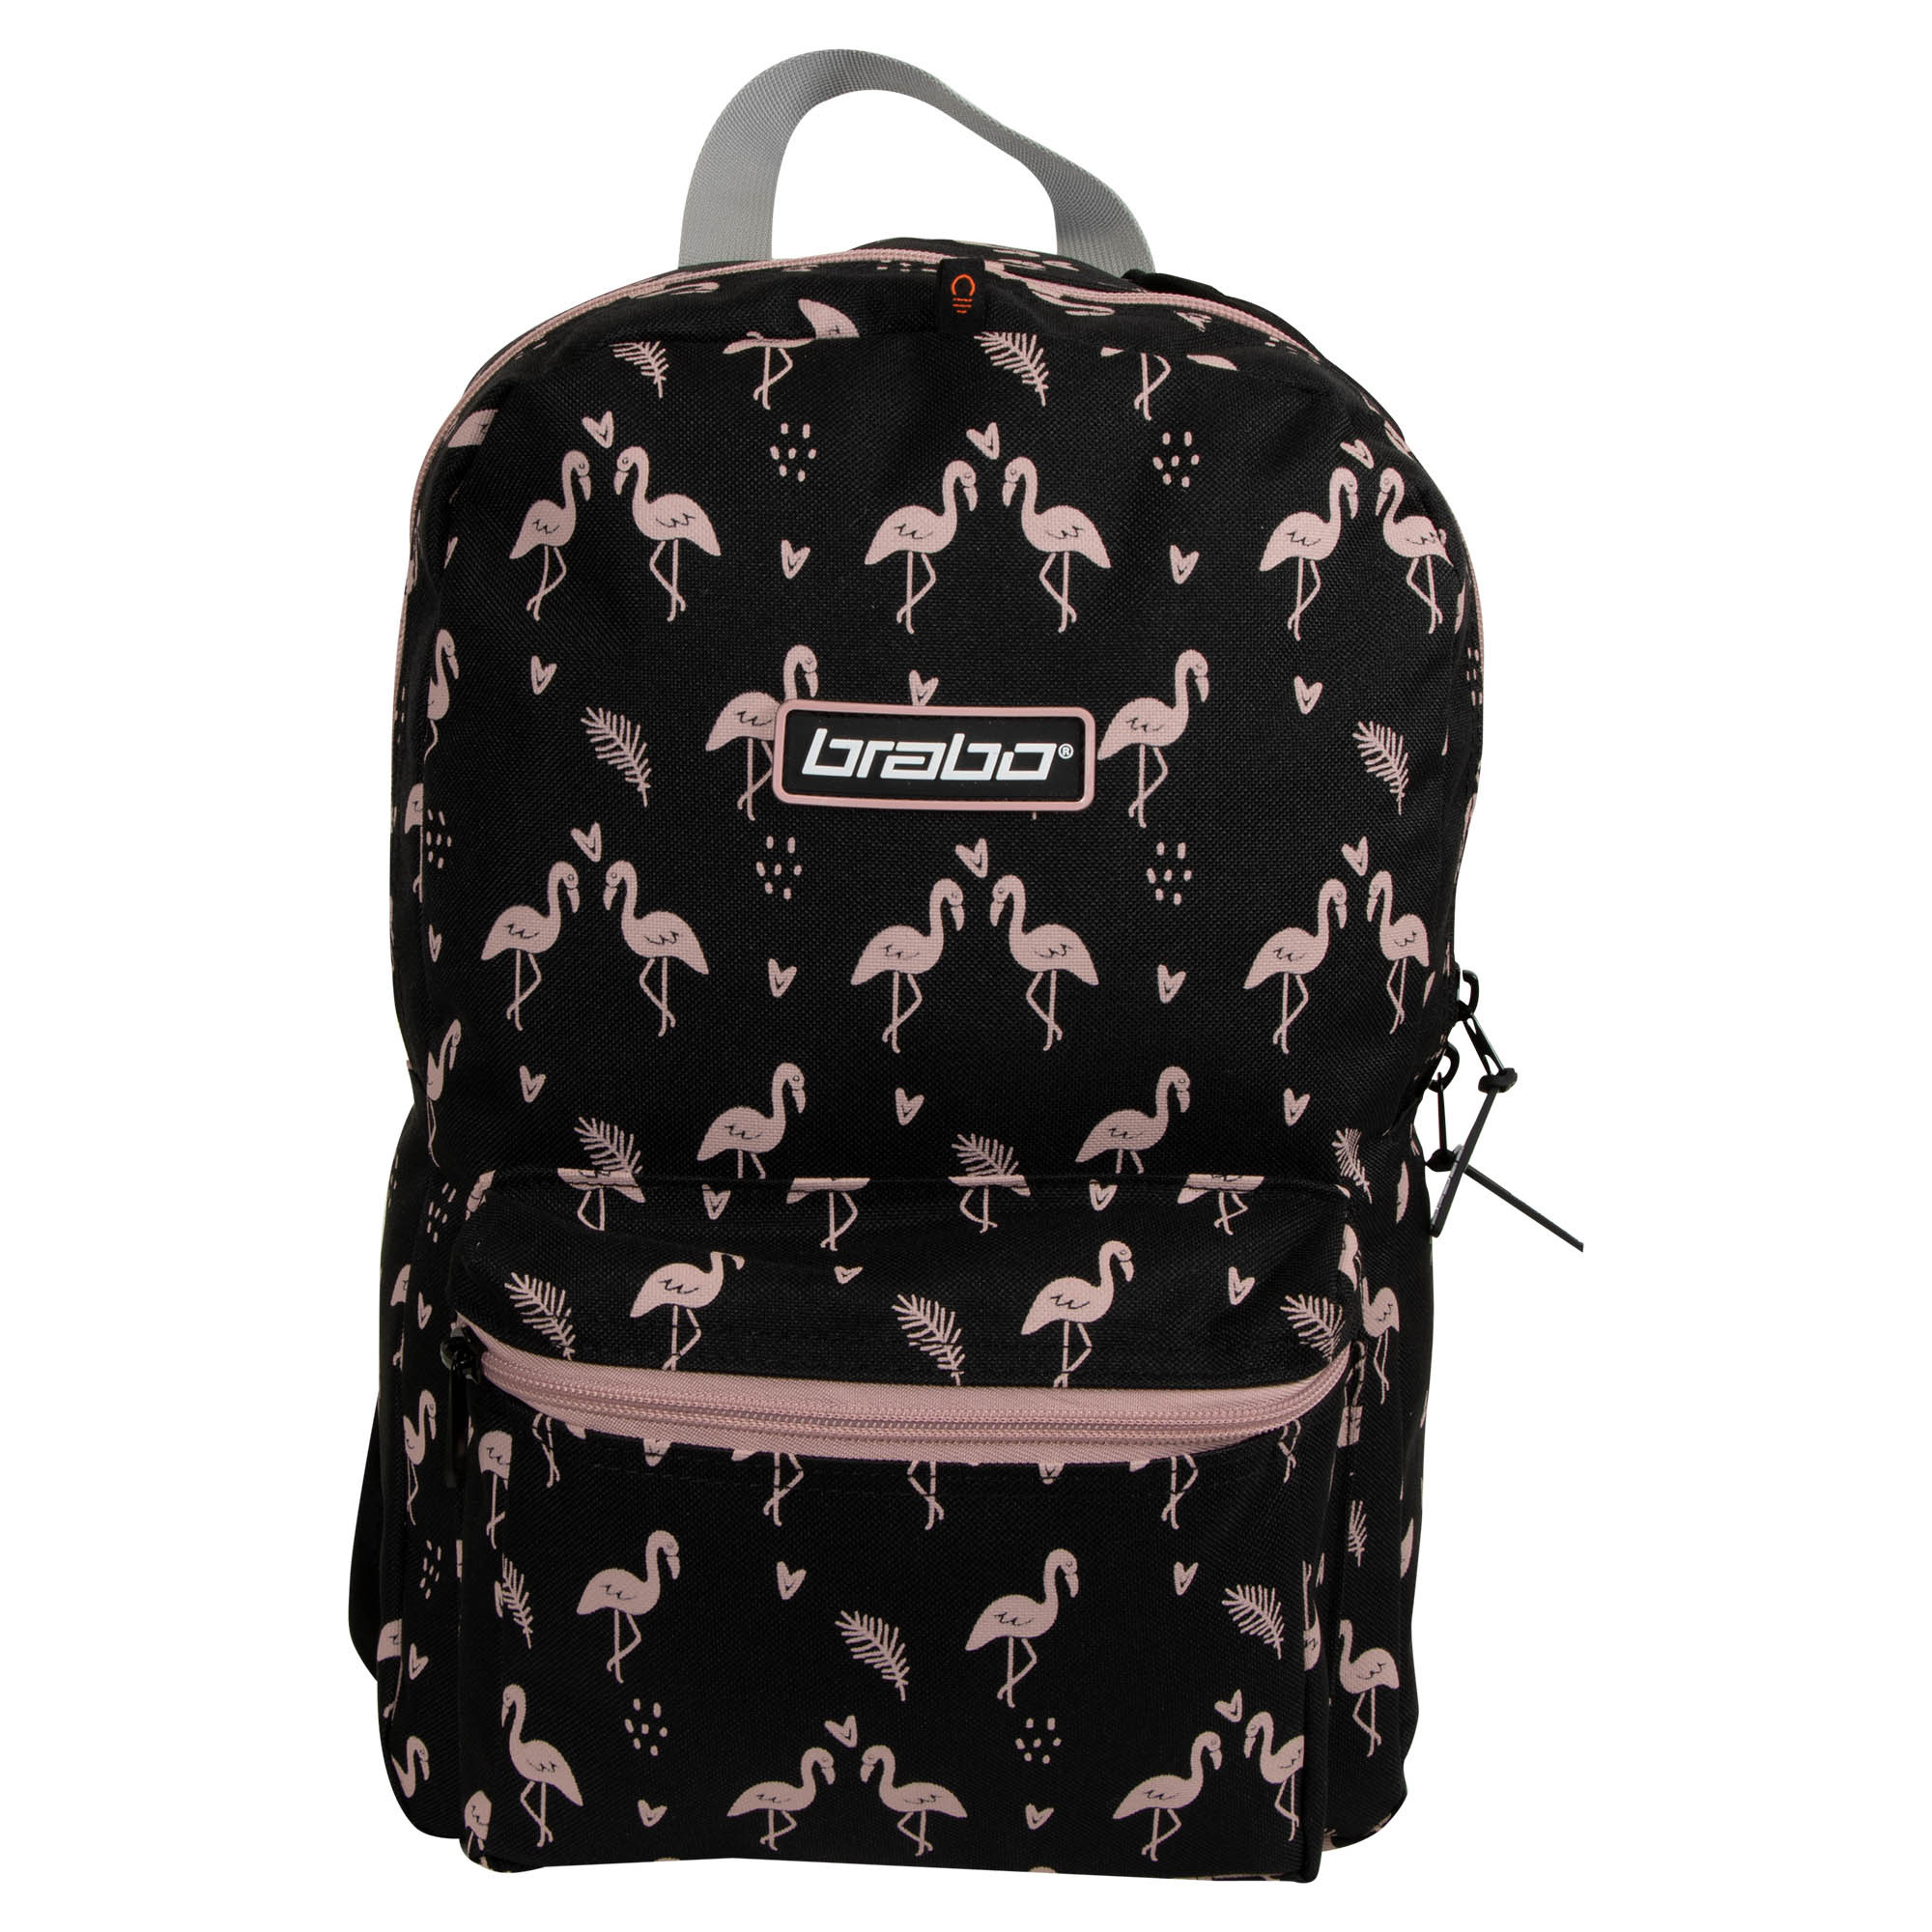 Brabo Backpack Storm Flamingo 22